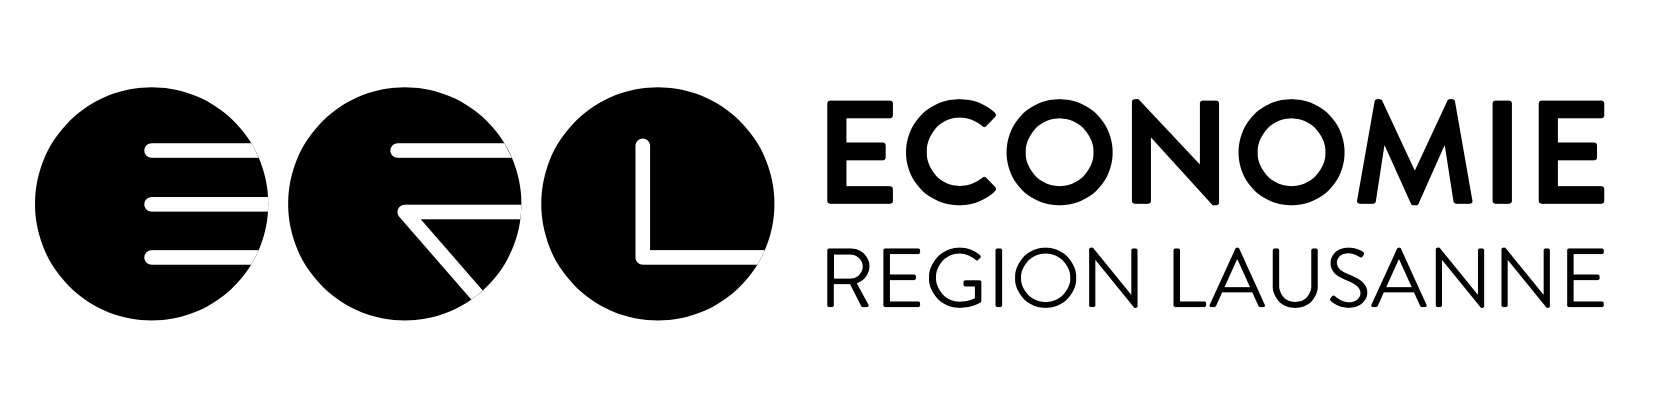 logo economie lausannoise | BUREAU